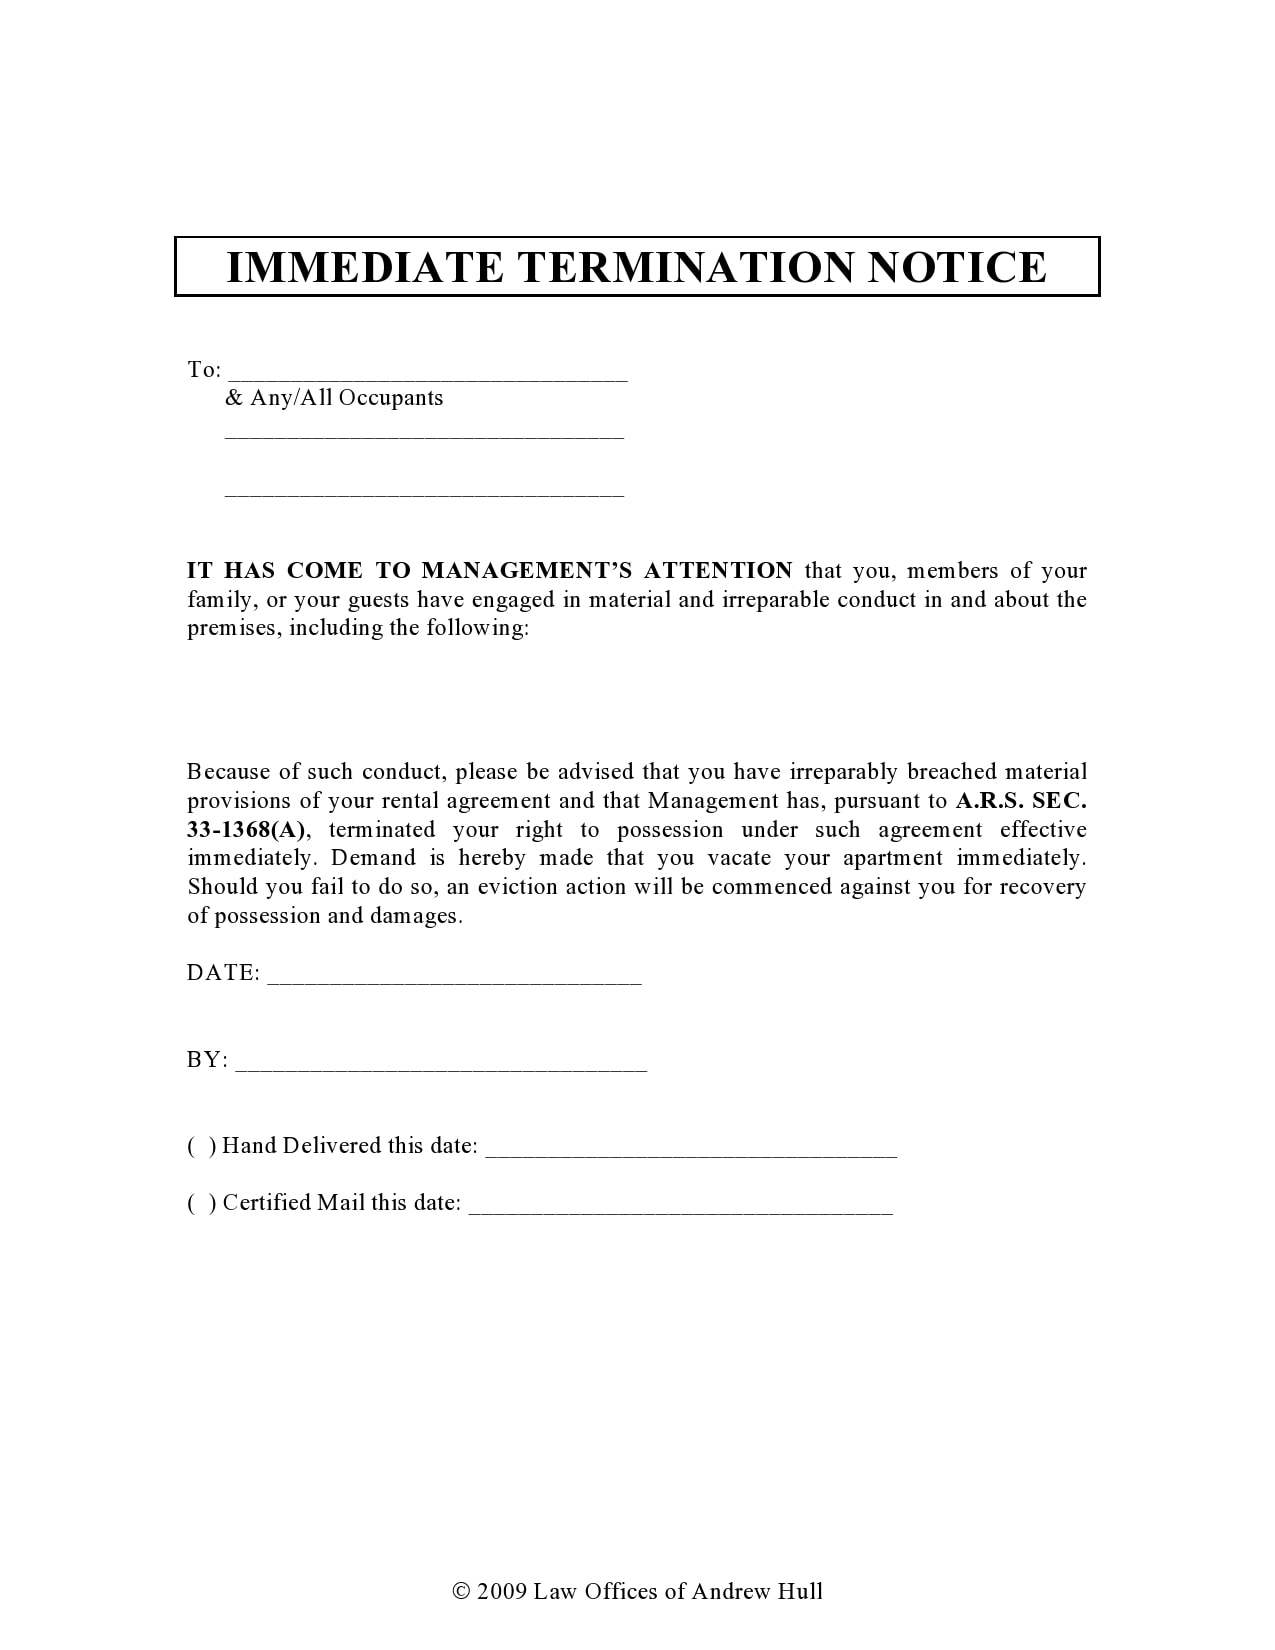 Written notice of job termination